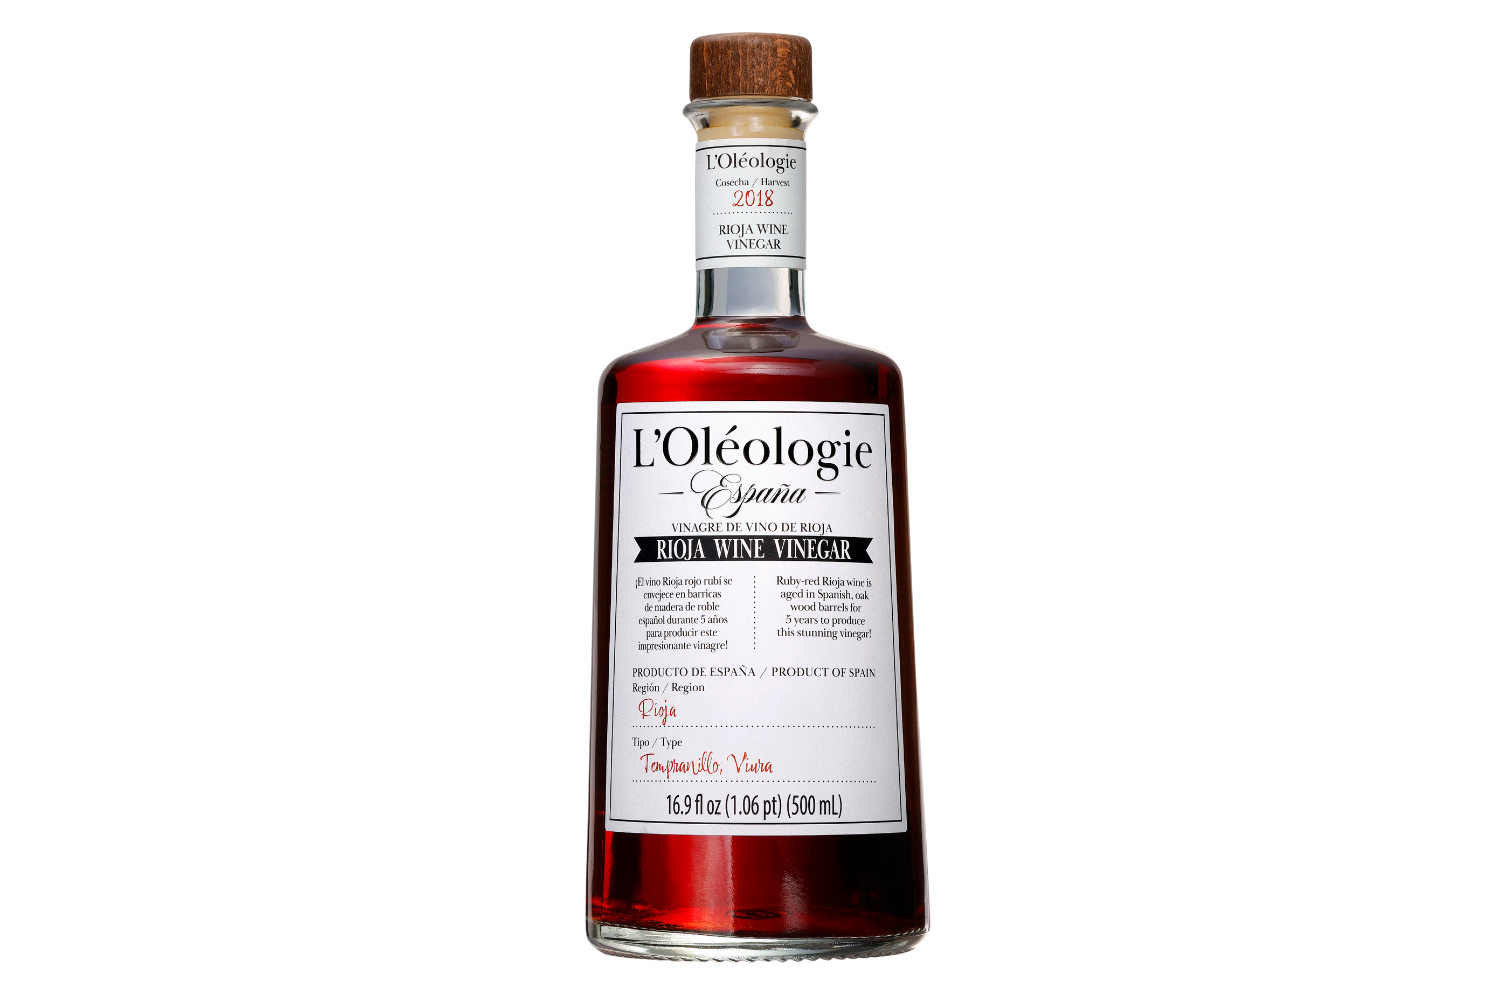 L'Olèologie Aged Vinegar 2 Pack Gift Set (Large)